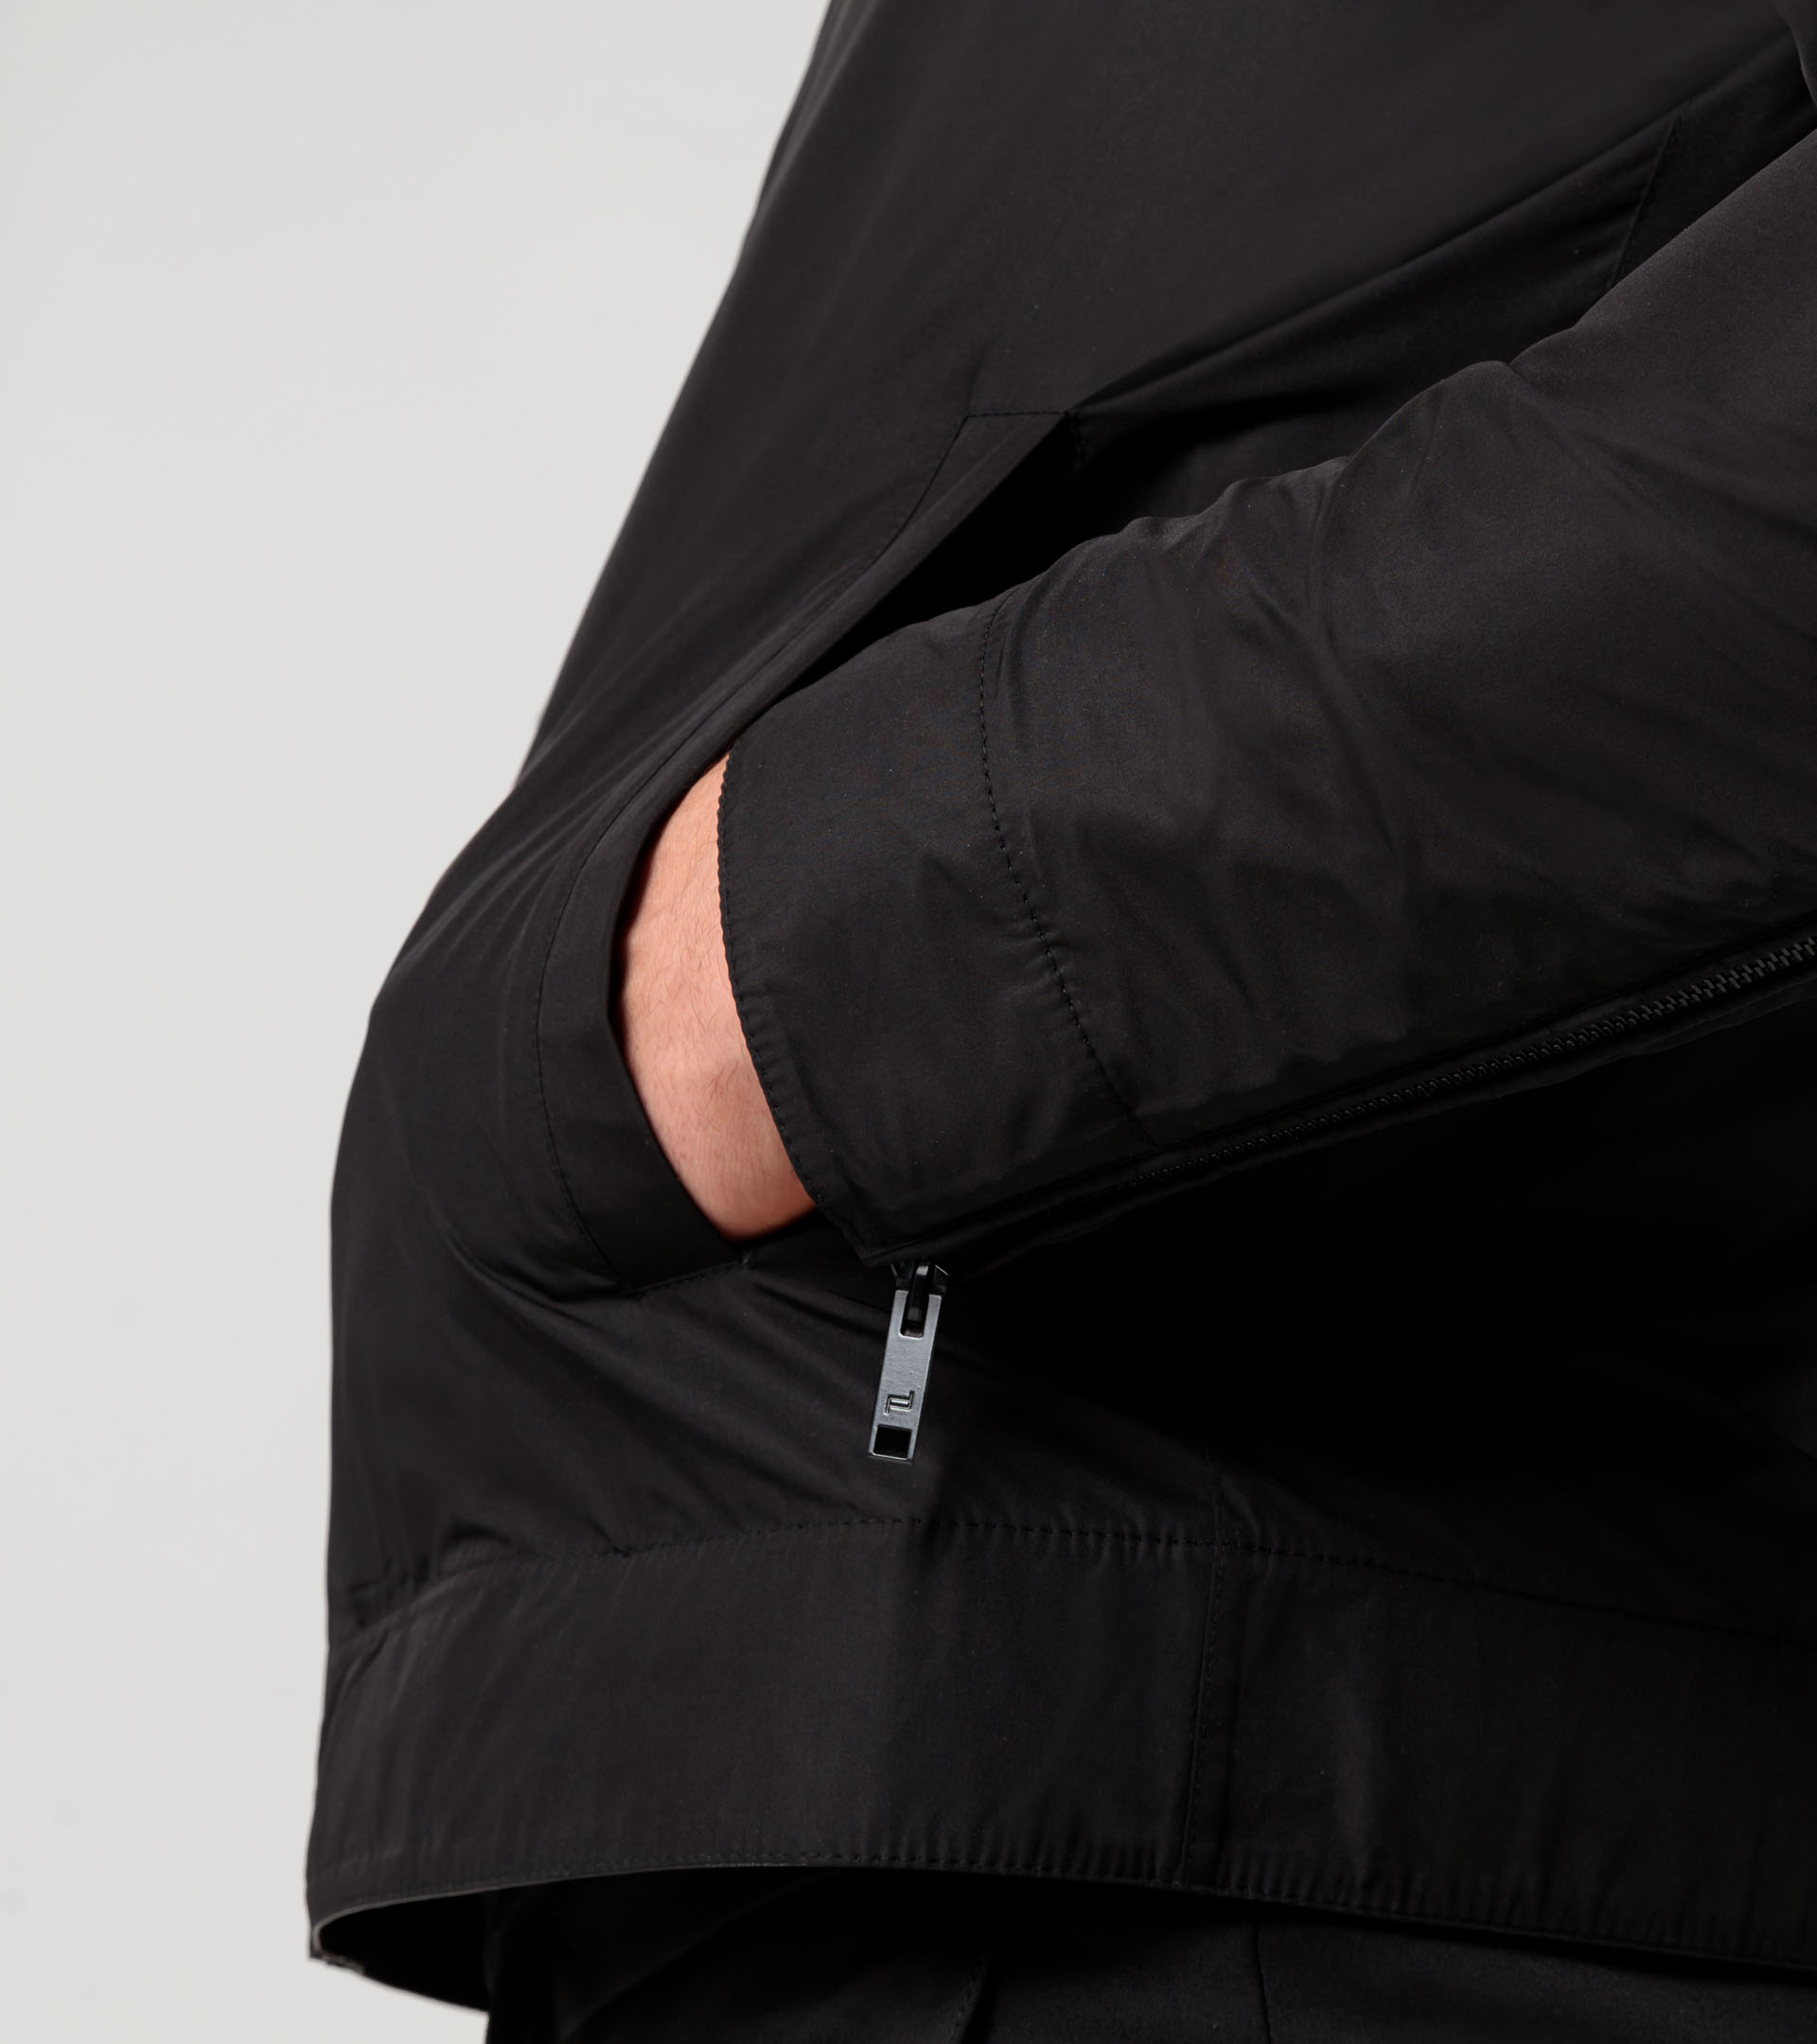 Athleisure reverse leather jacket - Designer Men's Jackets & Coats ...